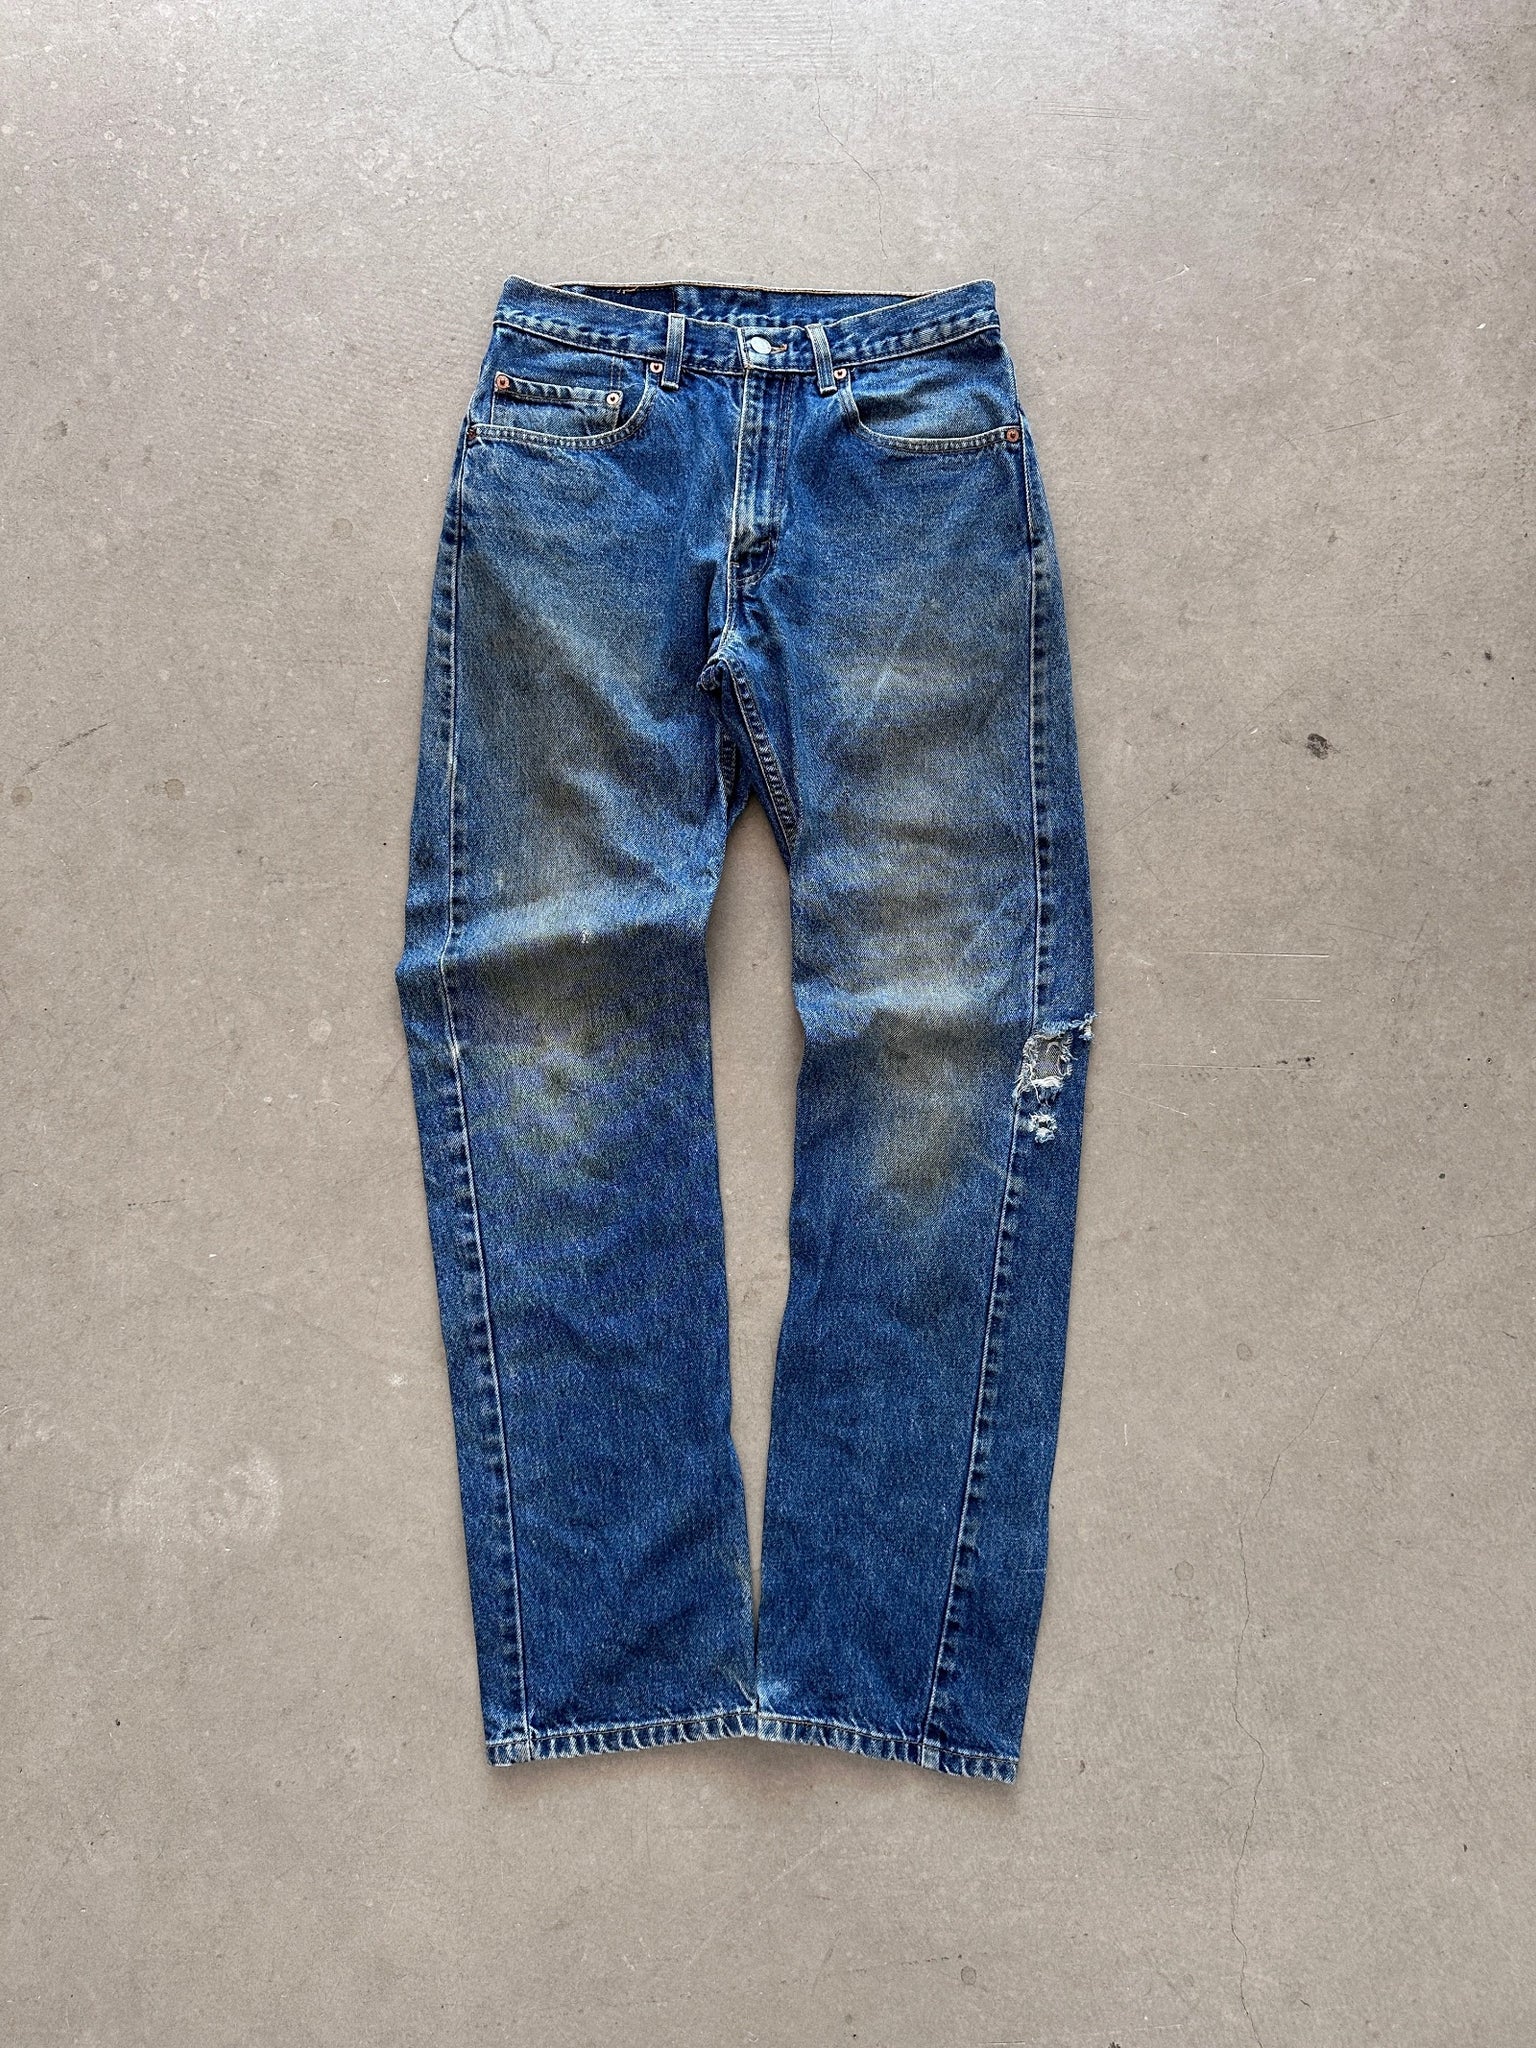 2002 Levi's 505 Jeans - 32 x 34